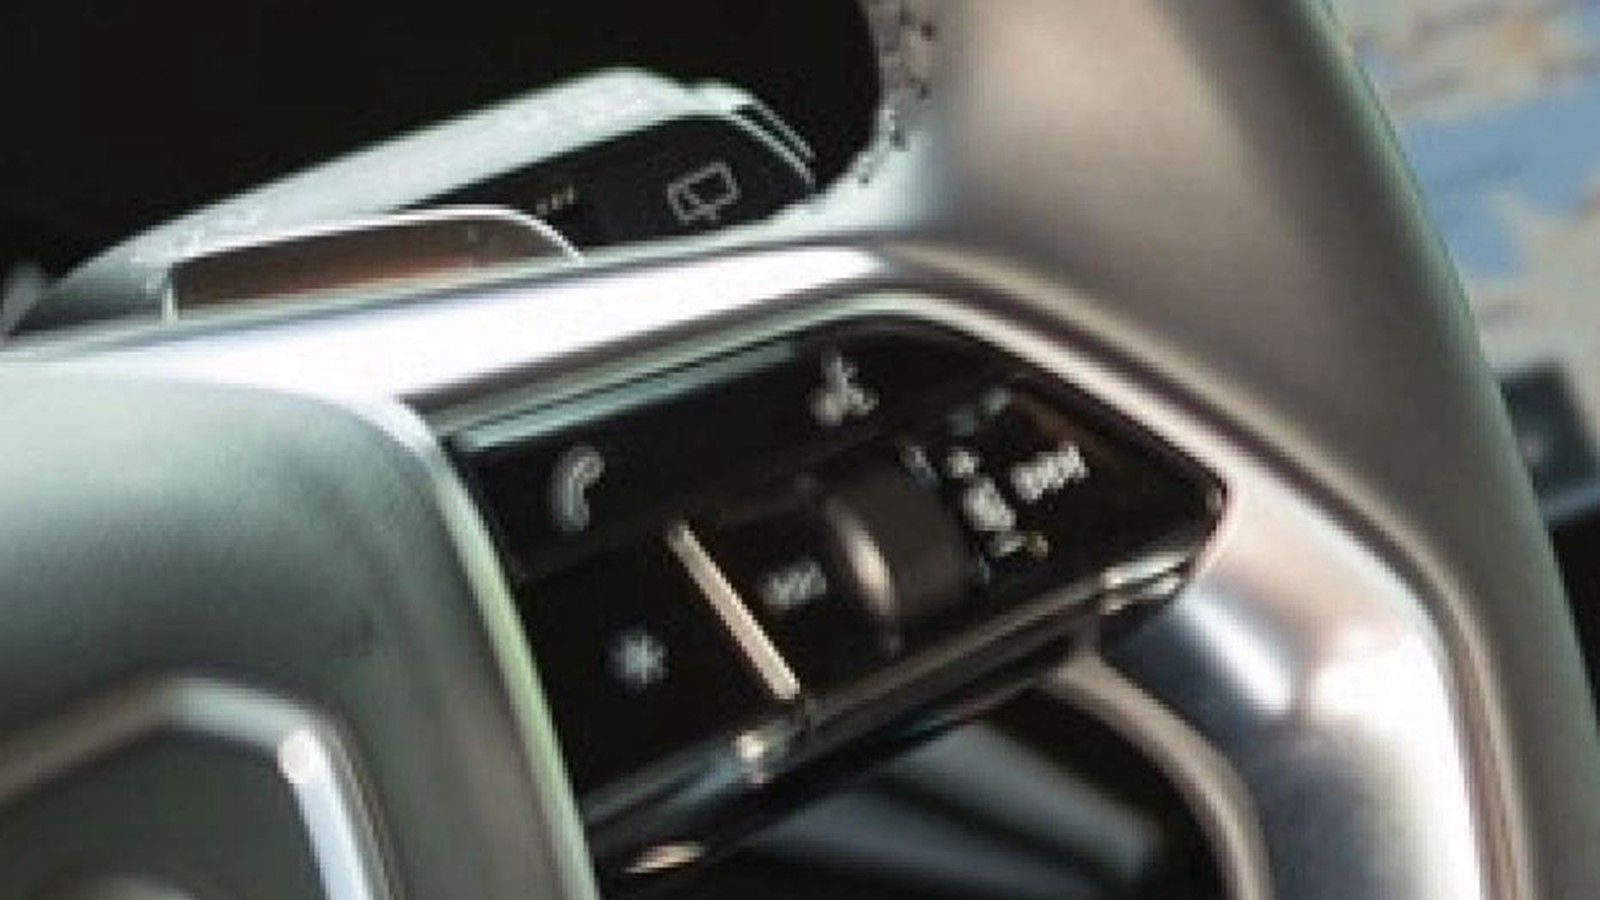 2023 Audi RS e-tron GT Interior 002